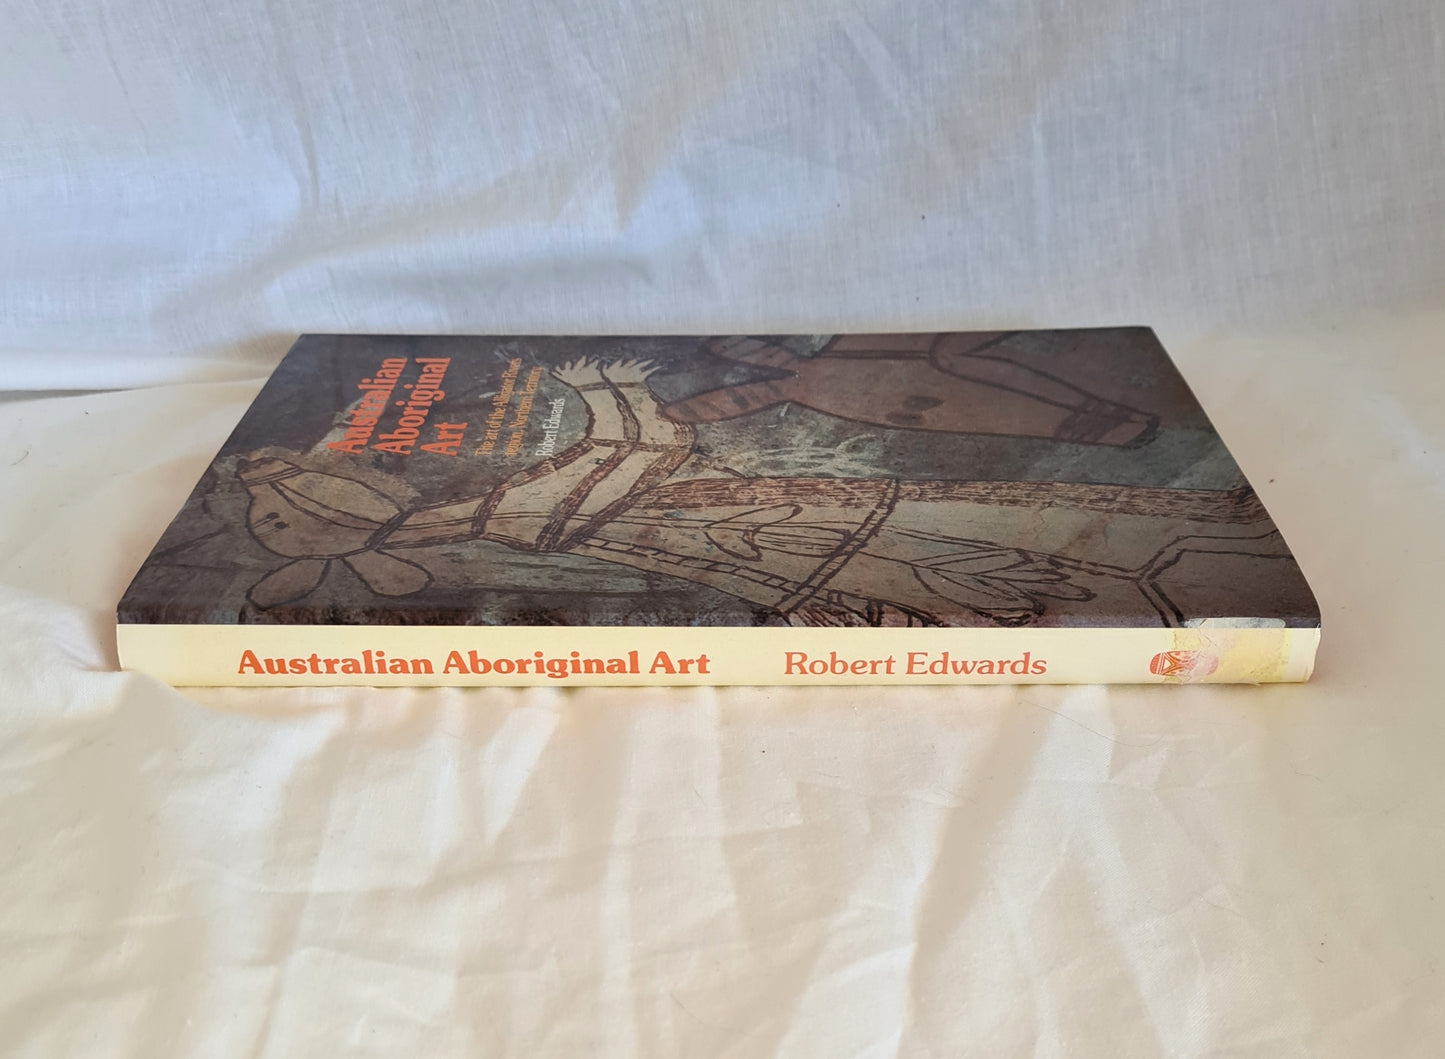 Australian Aboriginal Art by Robert Edwards